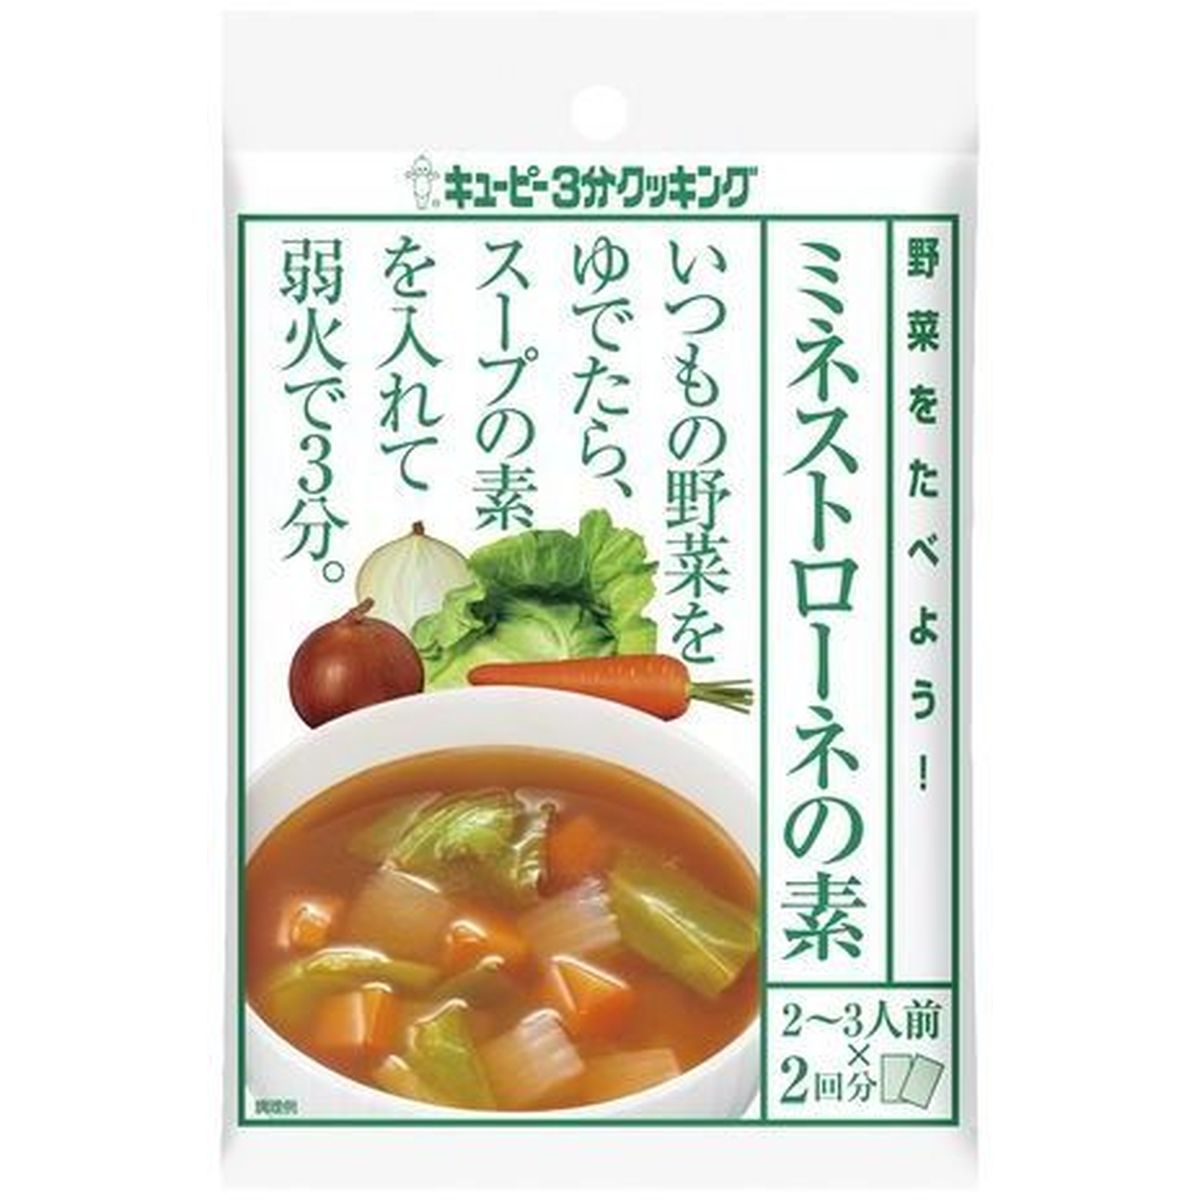 【8個入リ】キユーピー 野菜ヲタベヨウ!ミネストローネ 70g